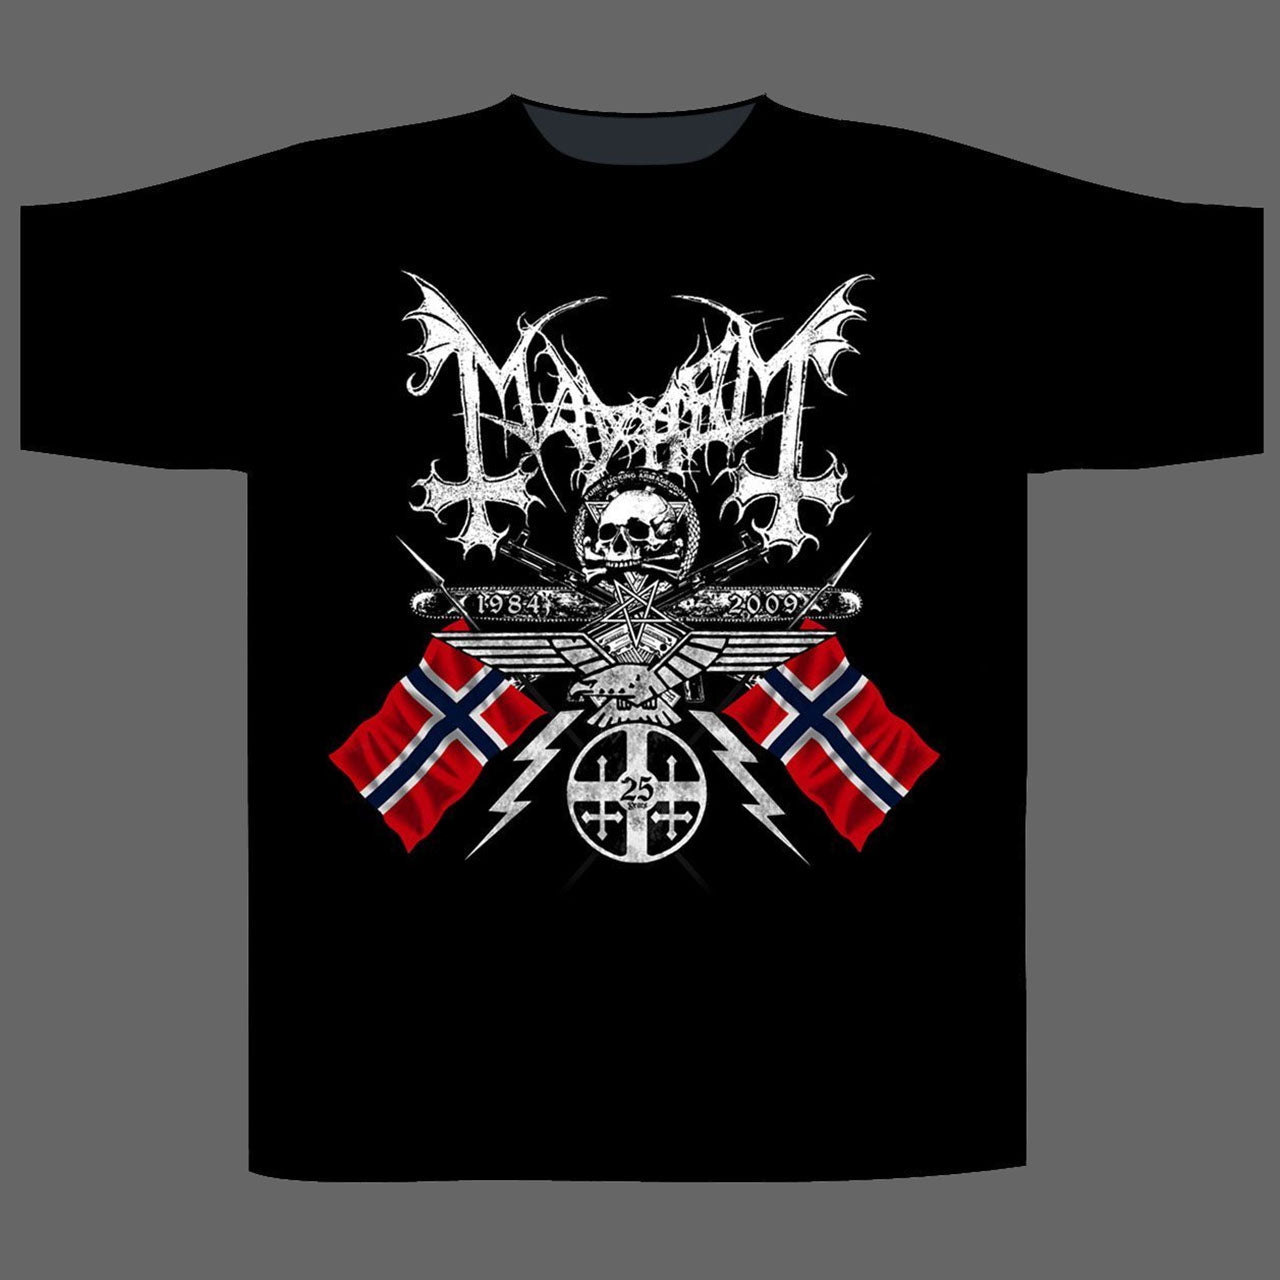 Mayhem - 1984-2009 Coat of Arms (T-Shirt)